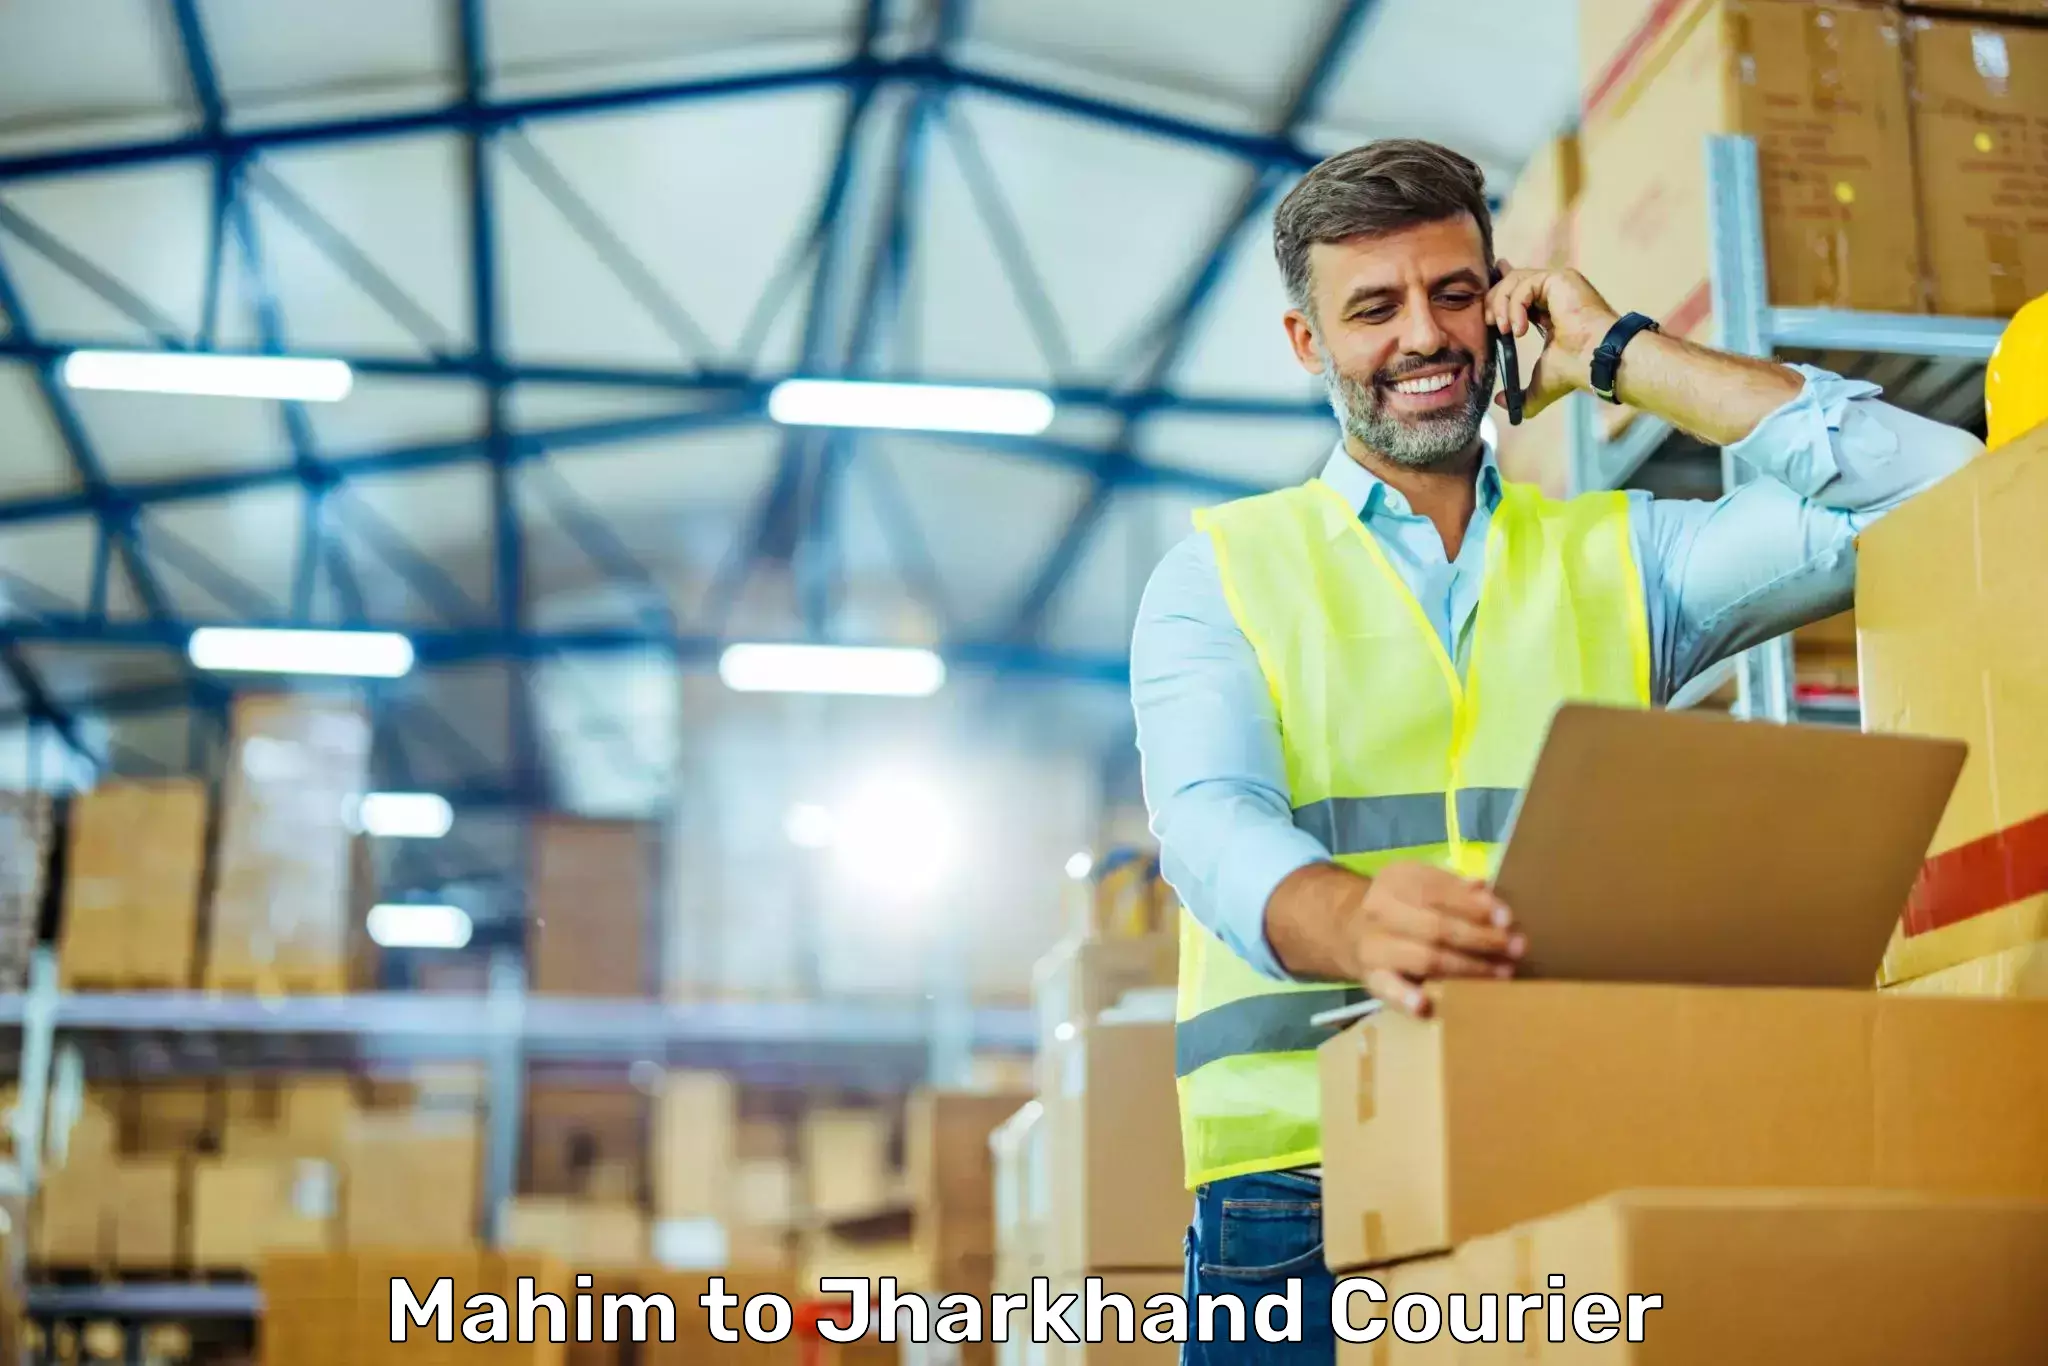 Dynamic courier operations Mahim to Mahagama